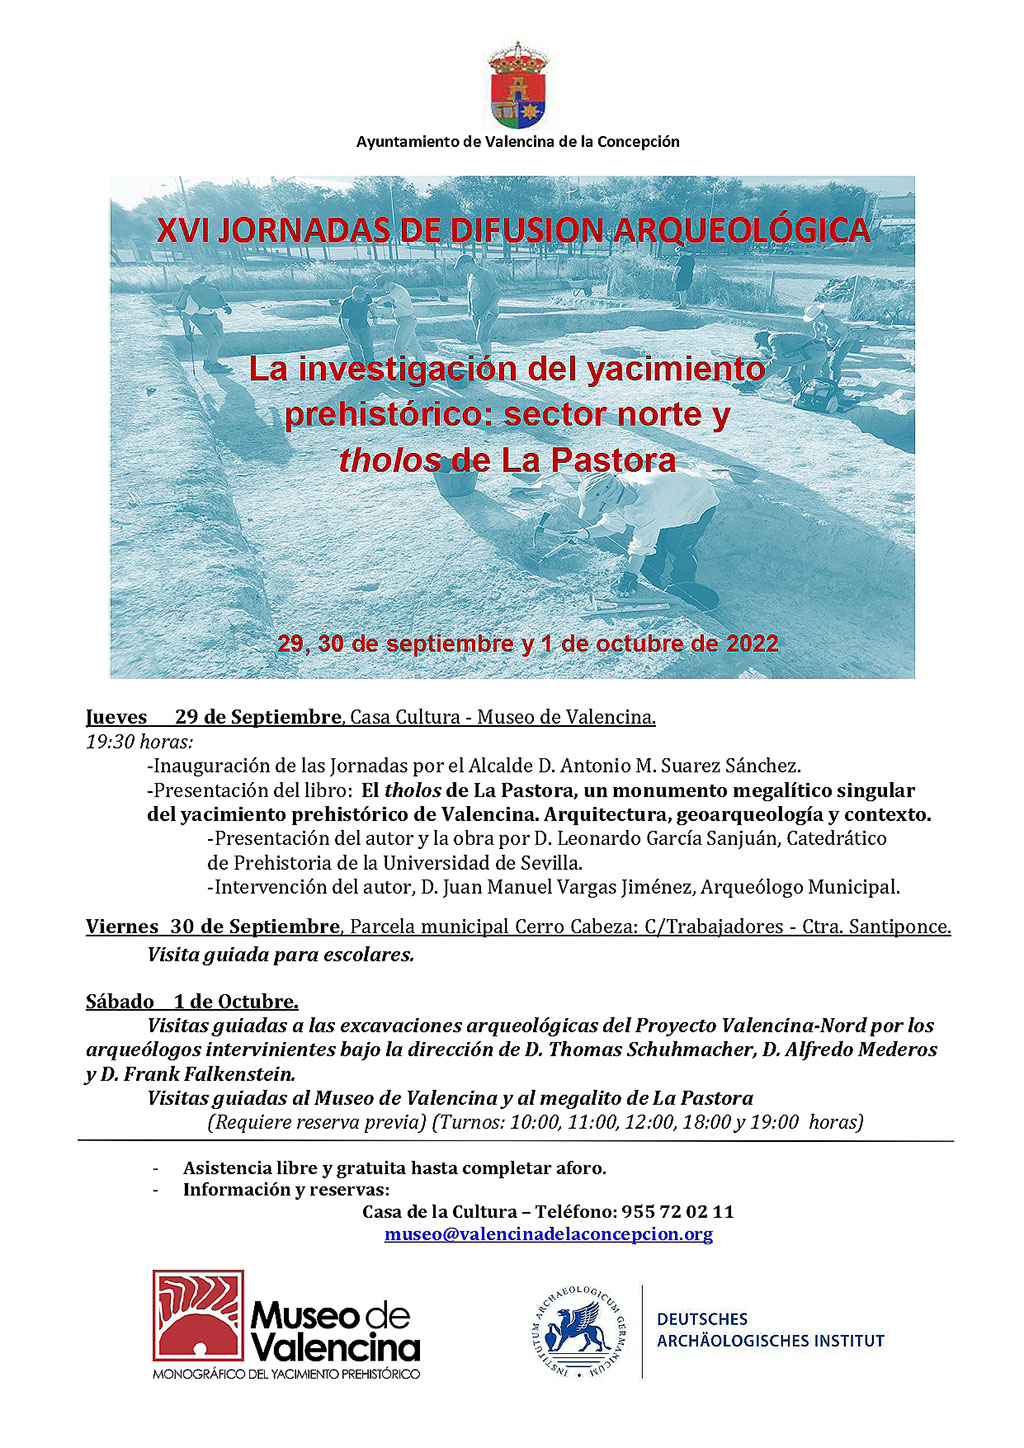 El Ayuntamiento de Valencina celebra las XVI Jornadas de Difusión de la Arqueología